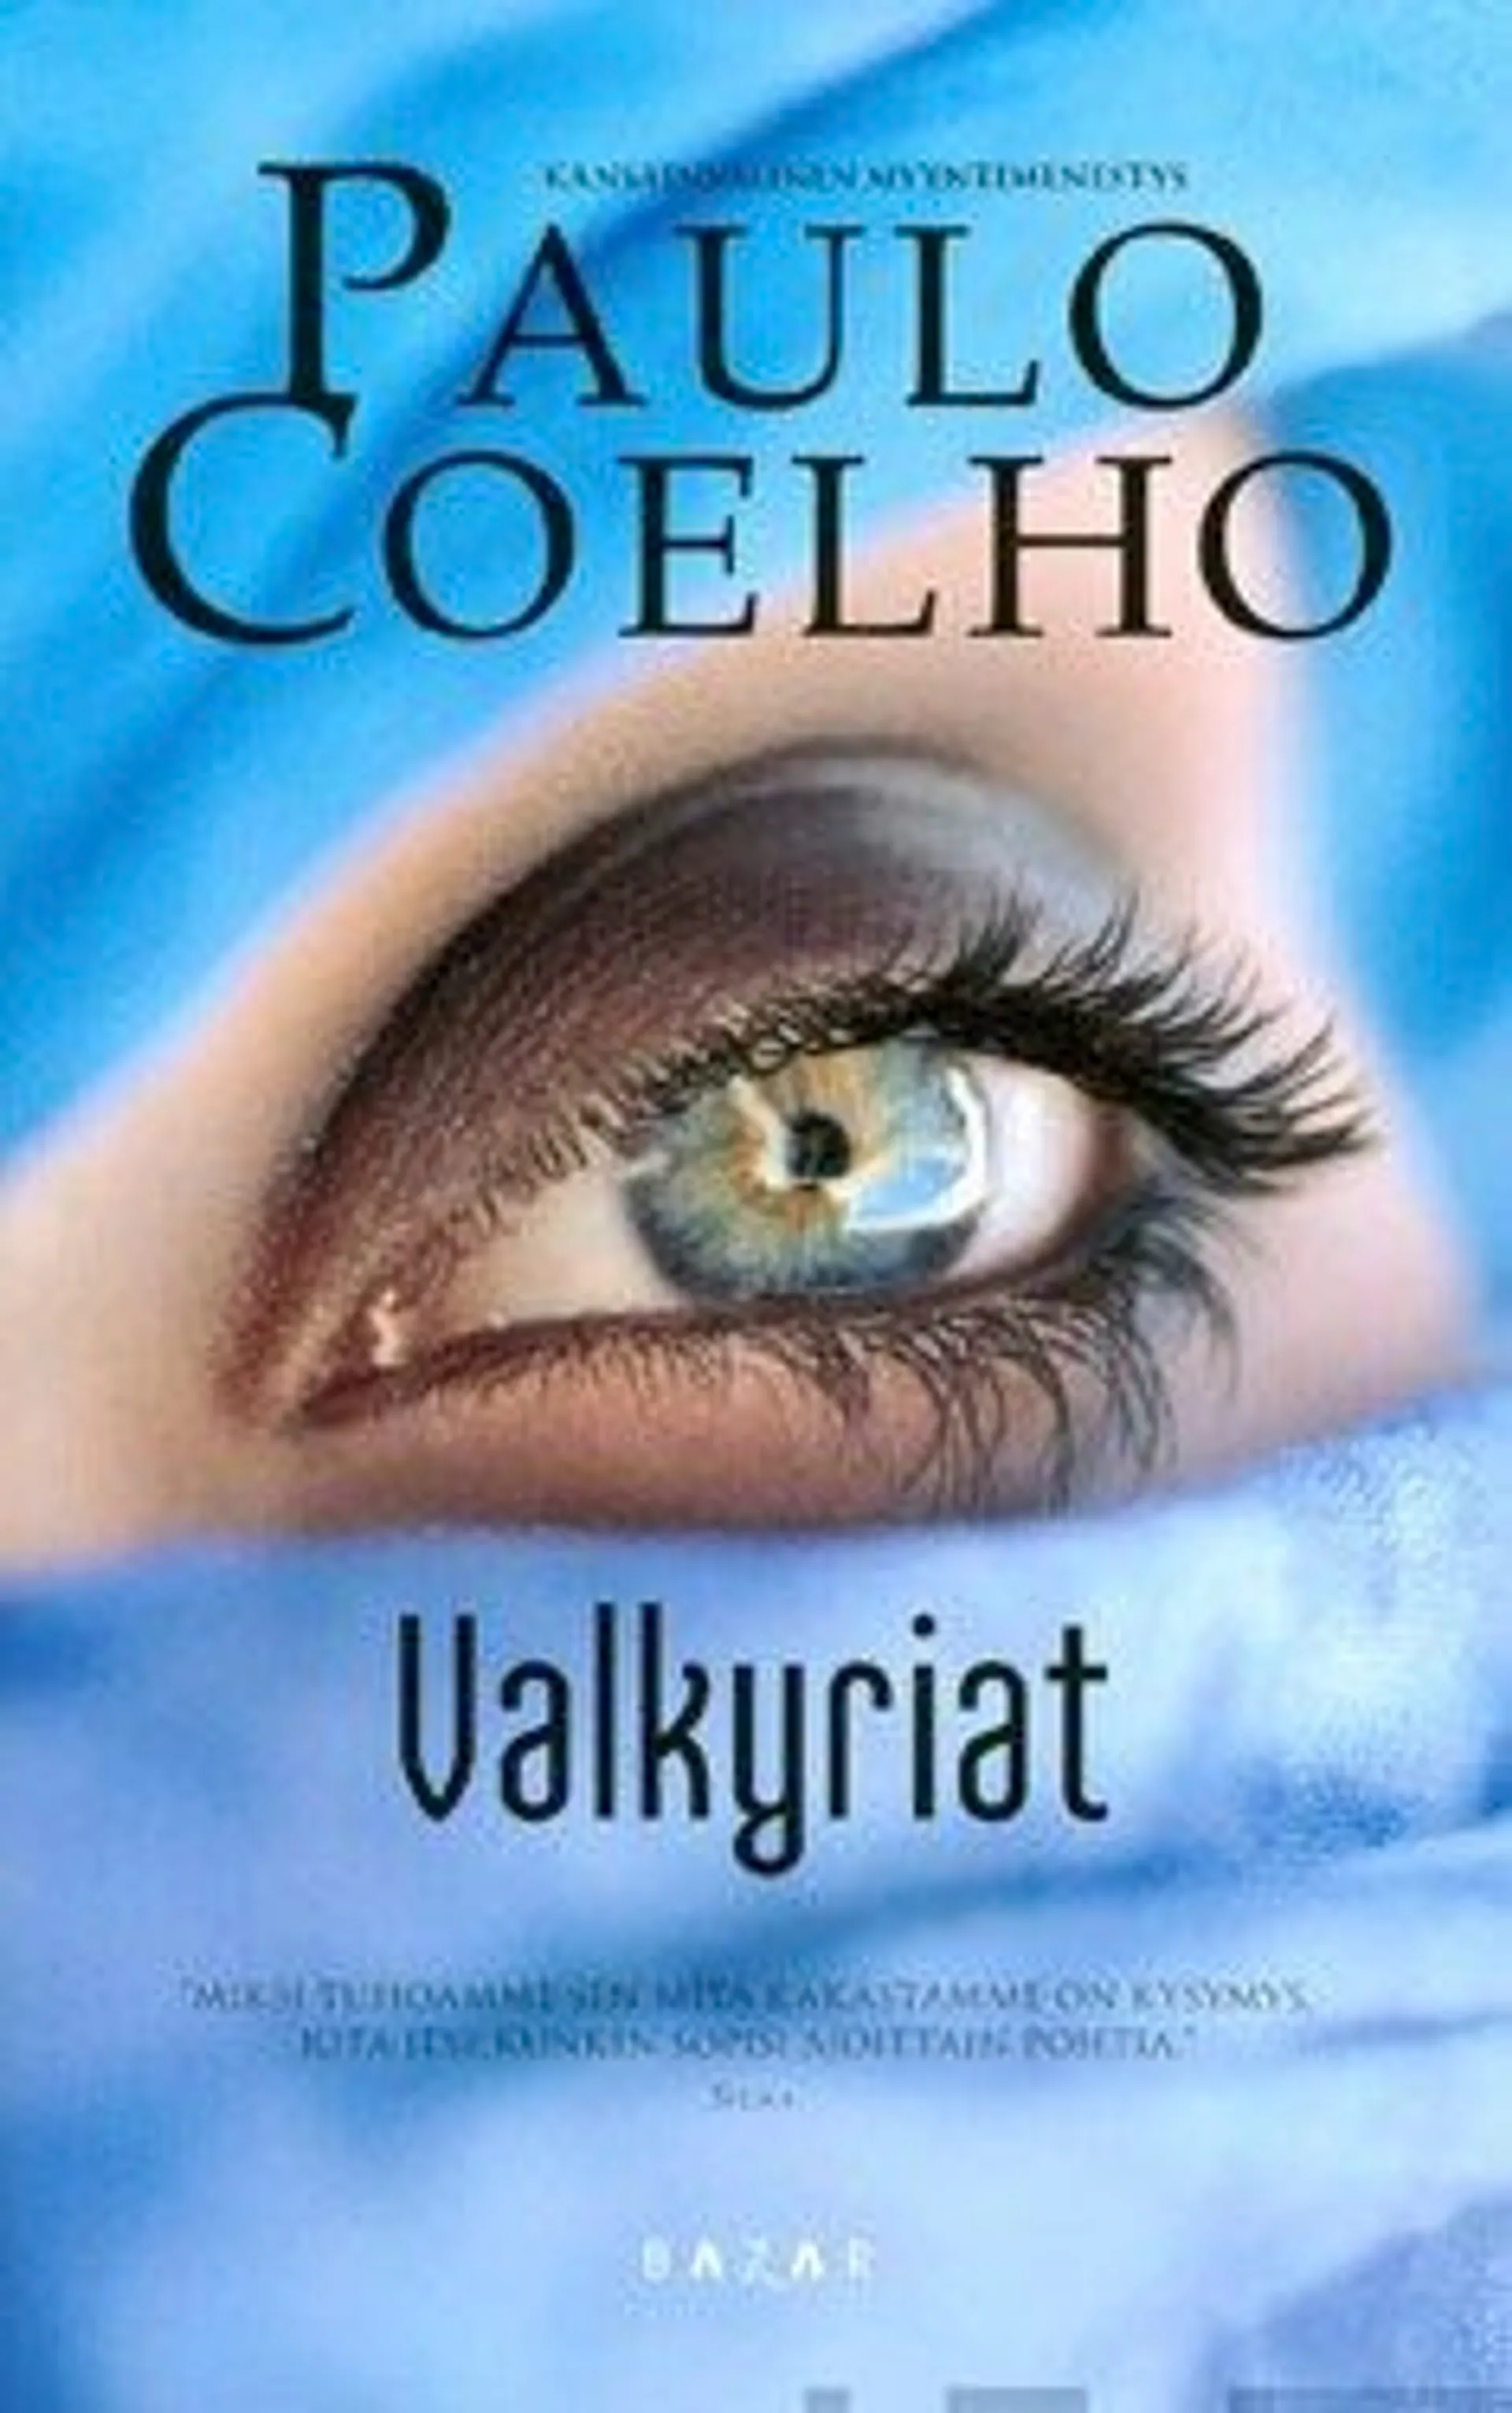 Coelho, Valkyriat